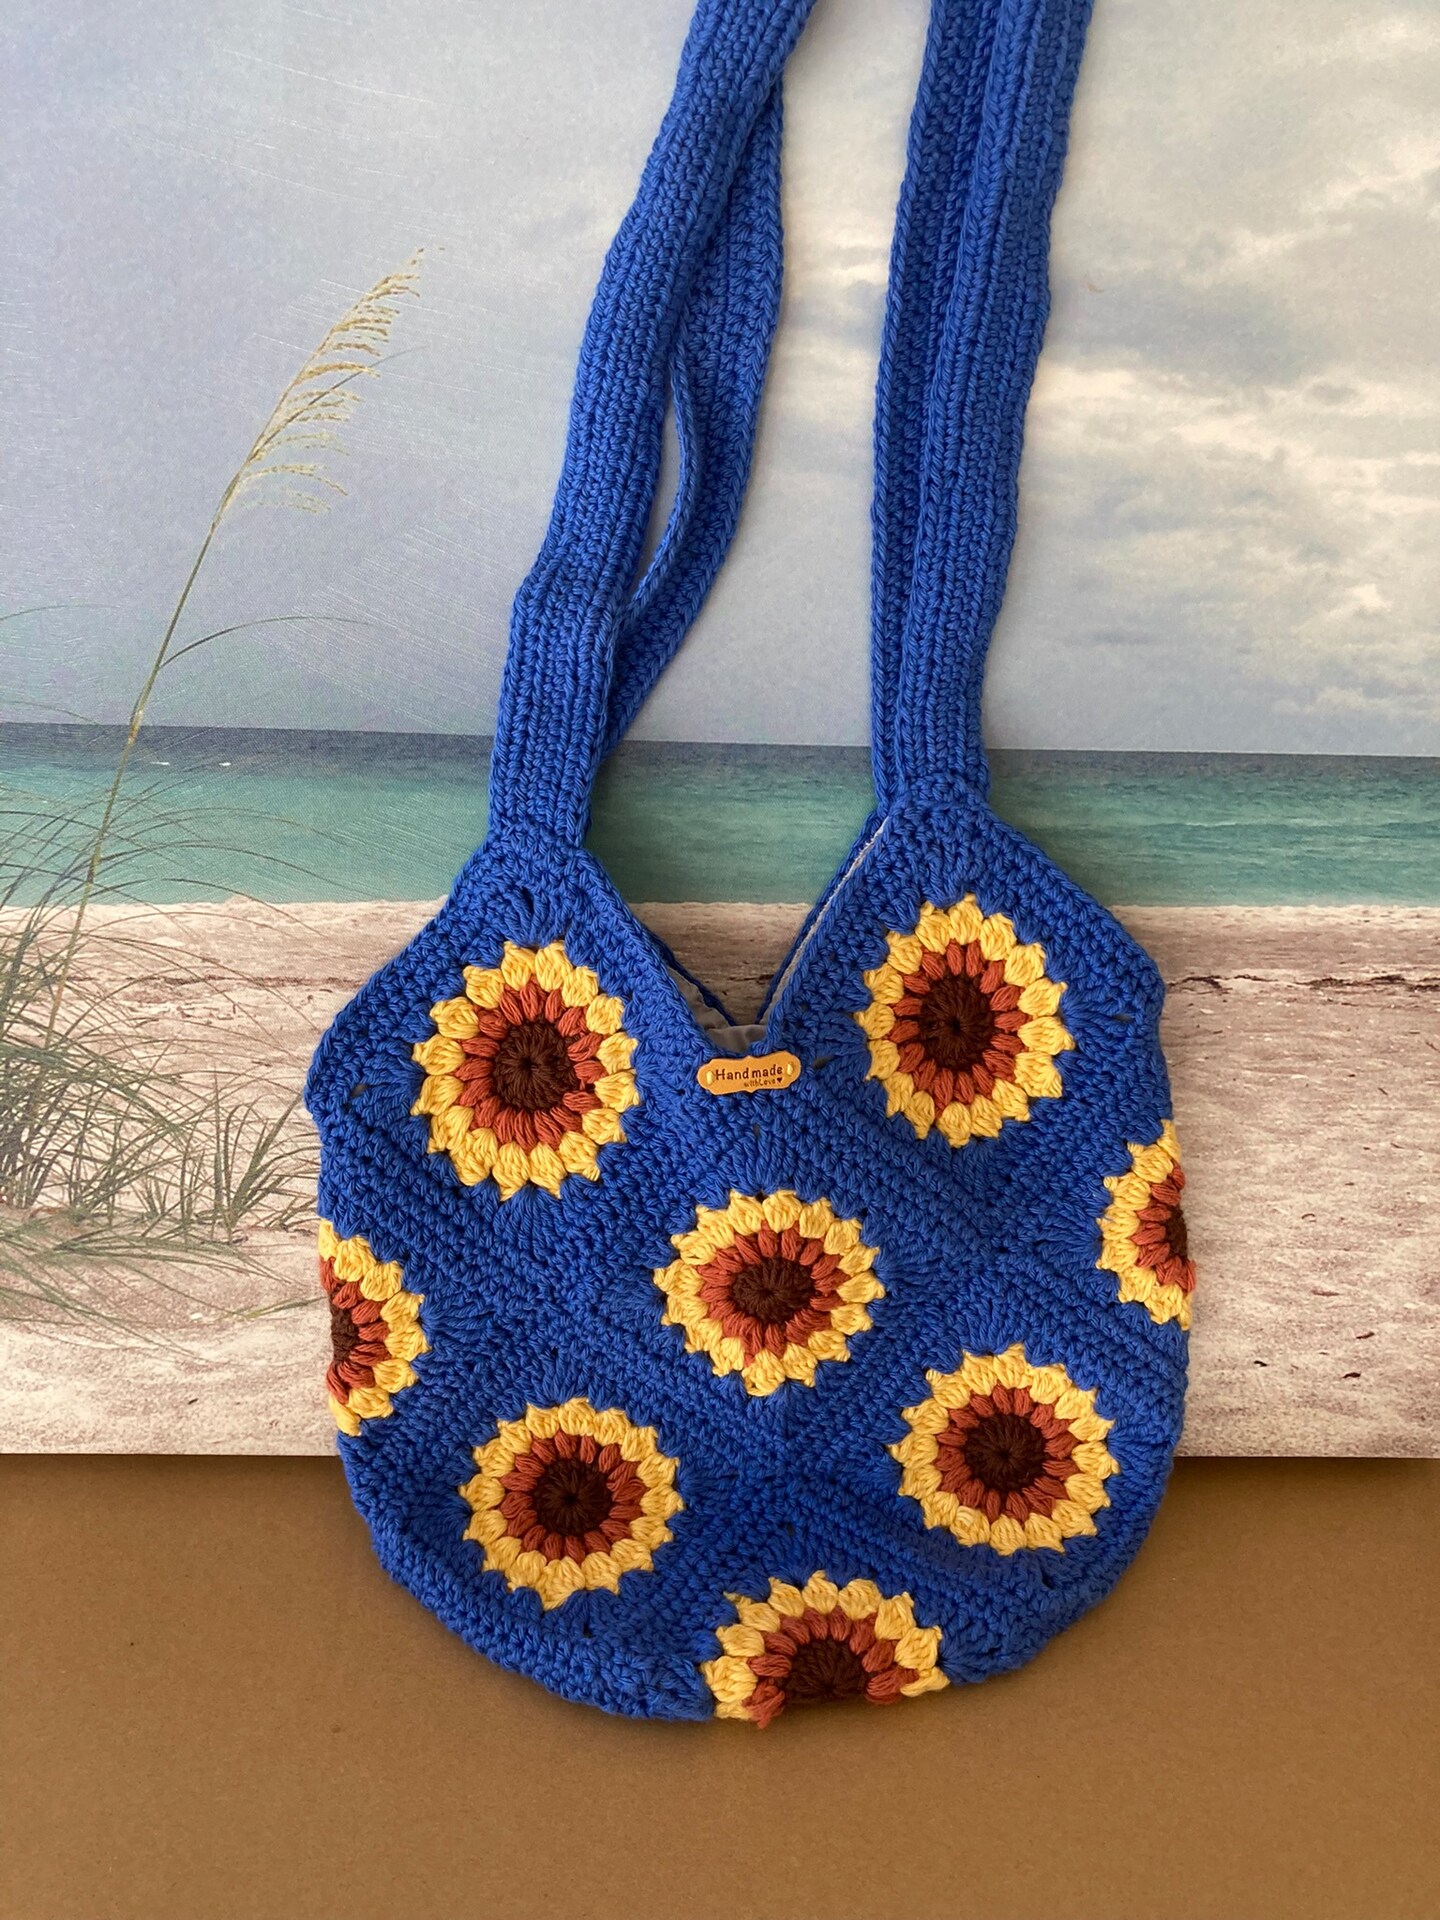 Crochet Sunflower Bag Sunflower Crossbody Bag Sunflower Bucket Bag Purse  Sunflower Top Handle Bag - Etsy | Crochet sunflower, Handmade crochet,  Crochet bag